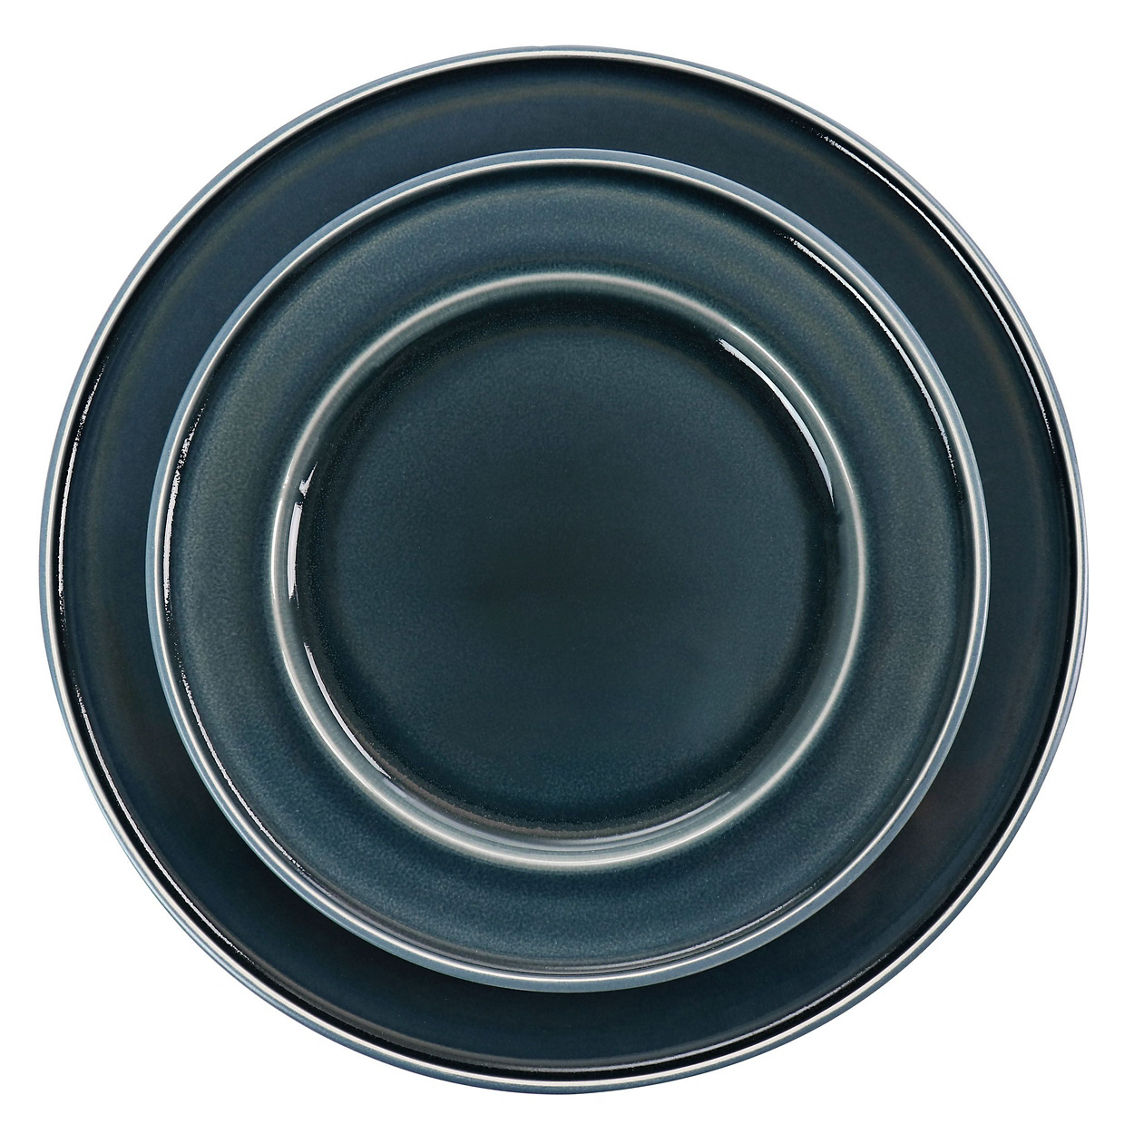 Martha Stewart 12 Piece Speckle Glaze Stoneware Dinnerware Set in Blue - Image 5 of 5